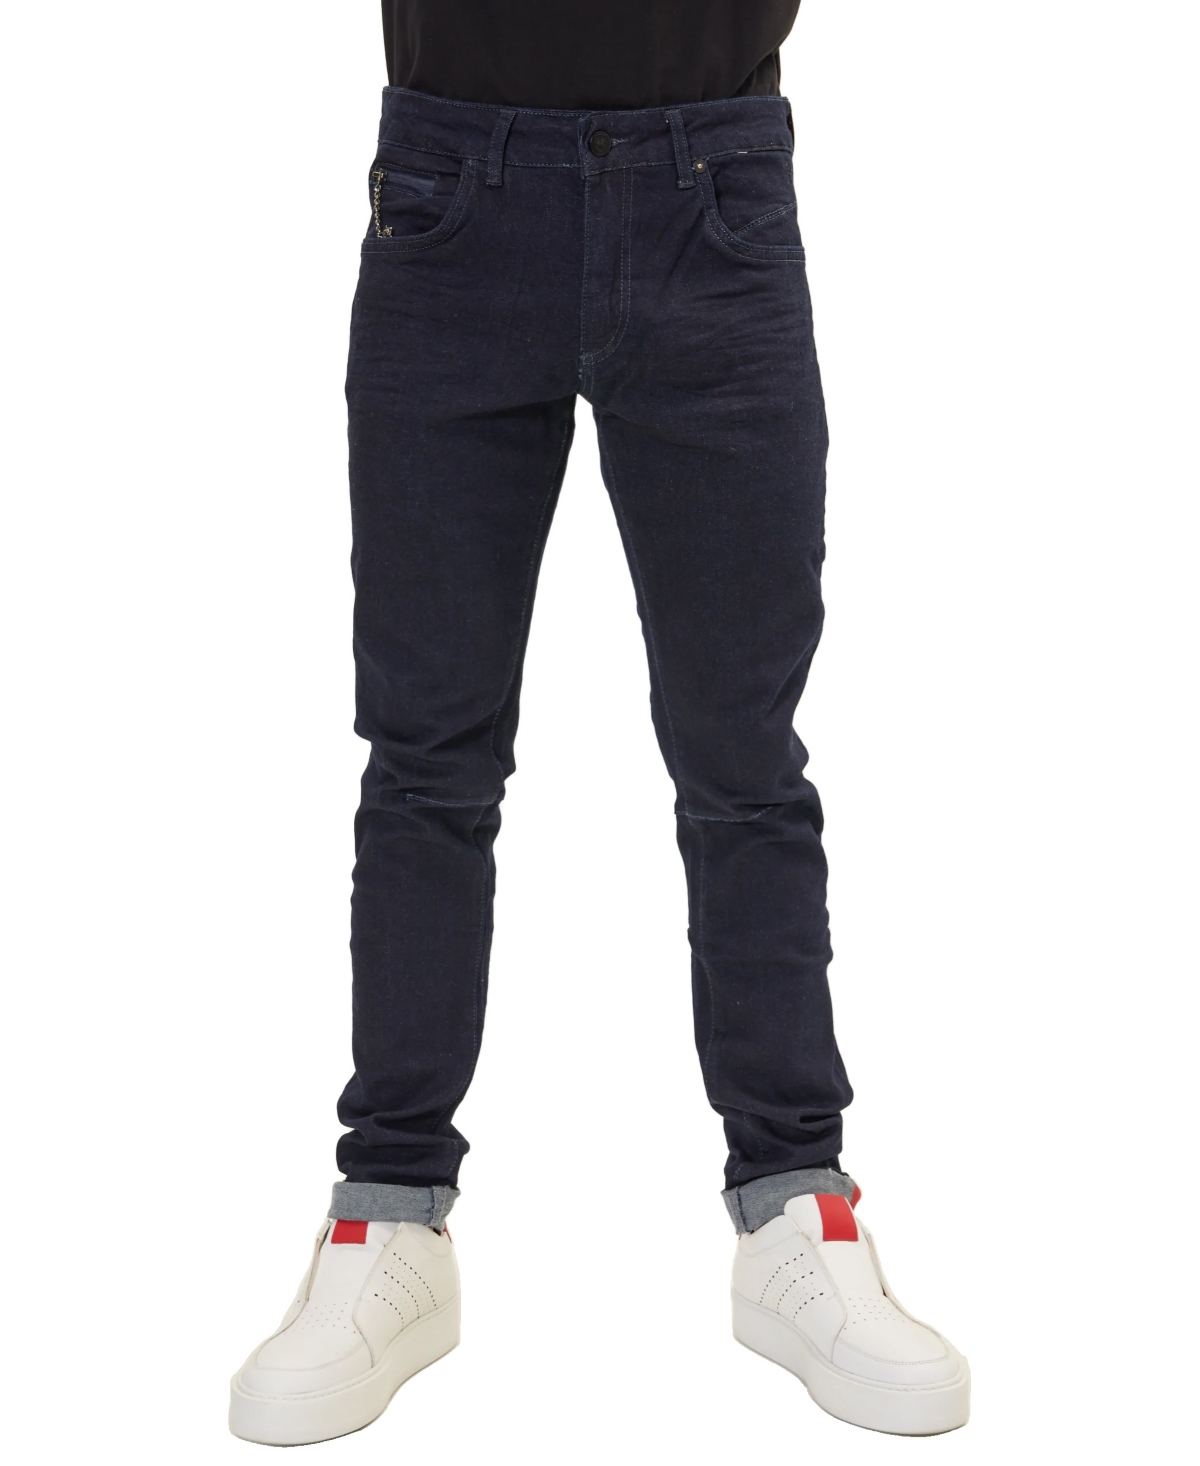 Men's Modern Inner Slim Fit Jeans - Black